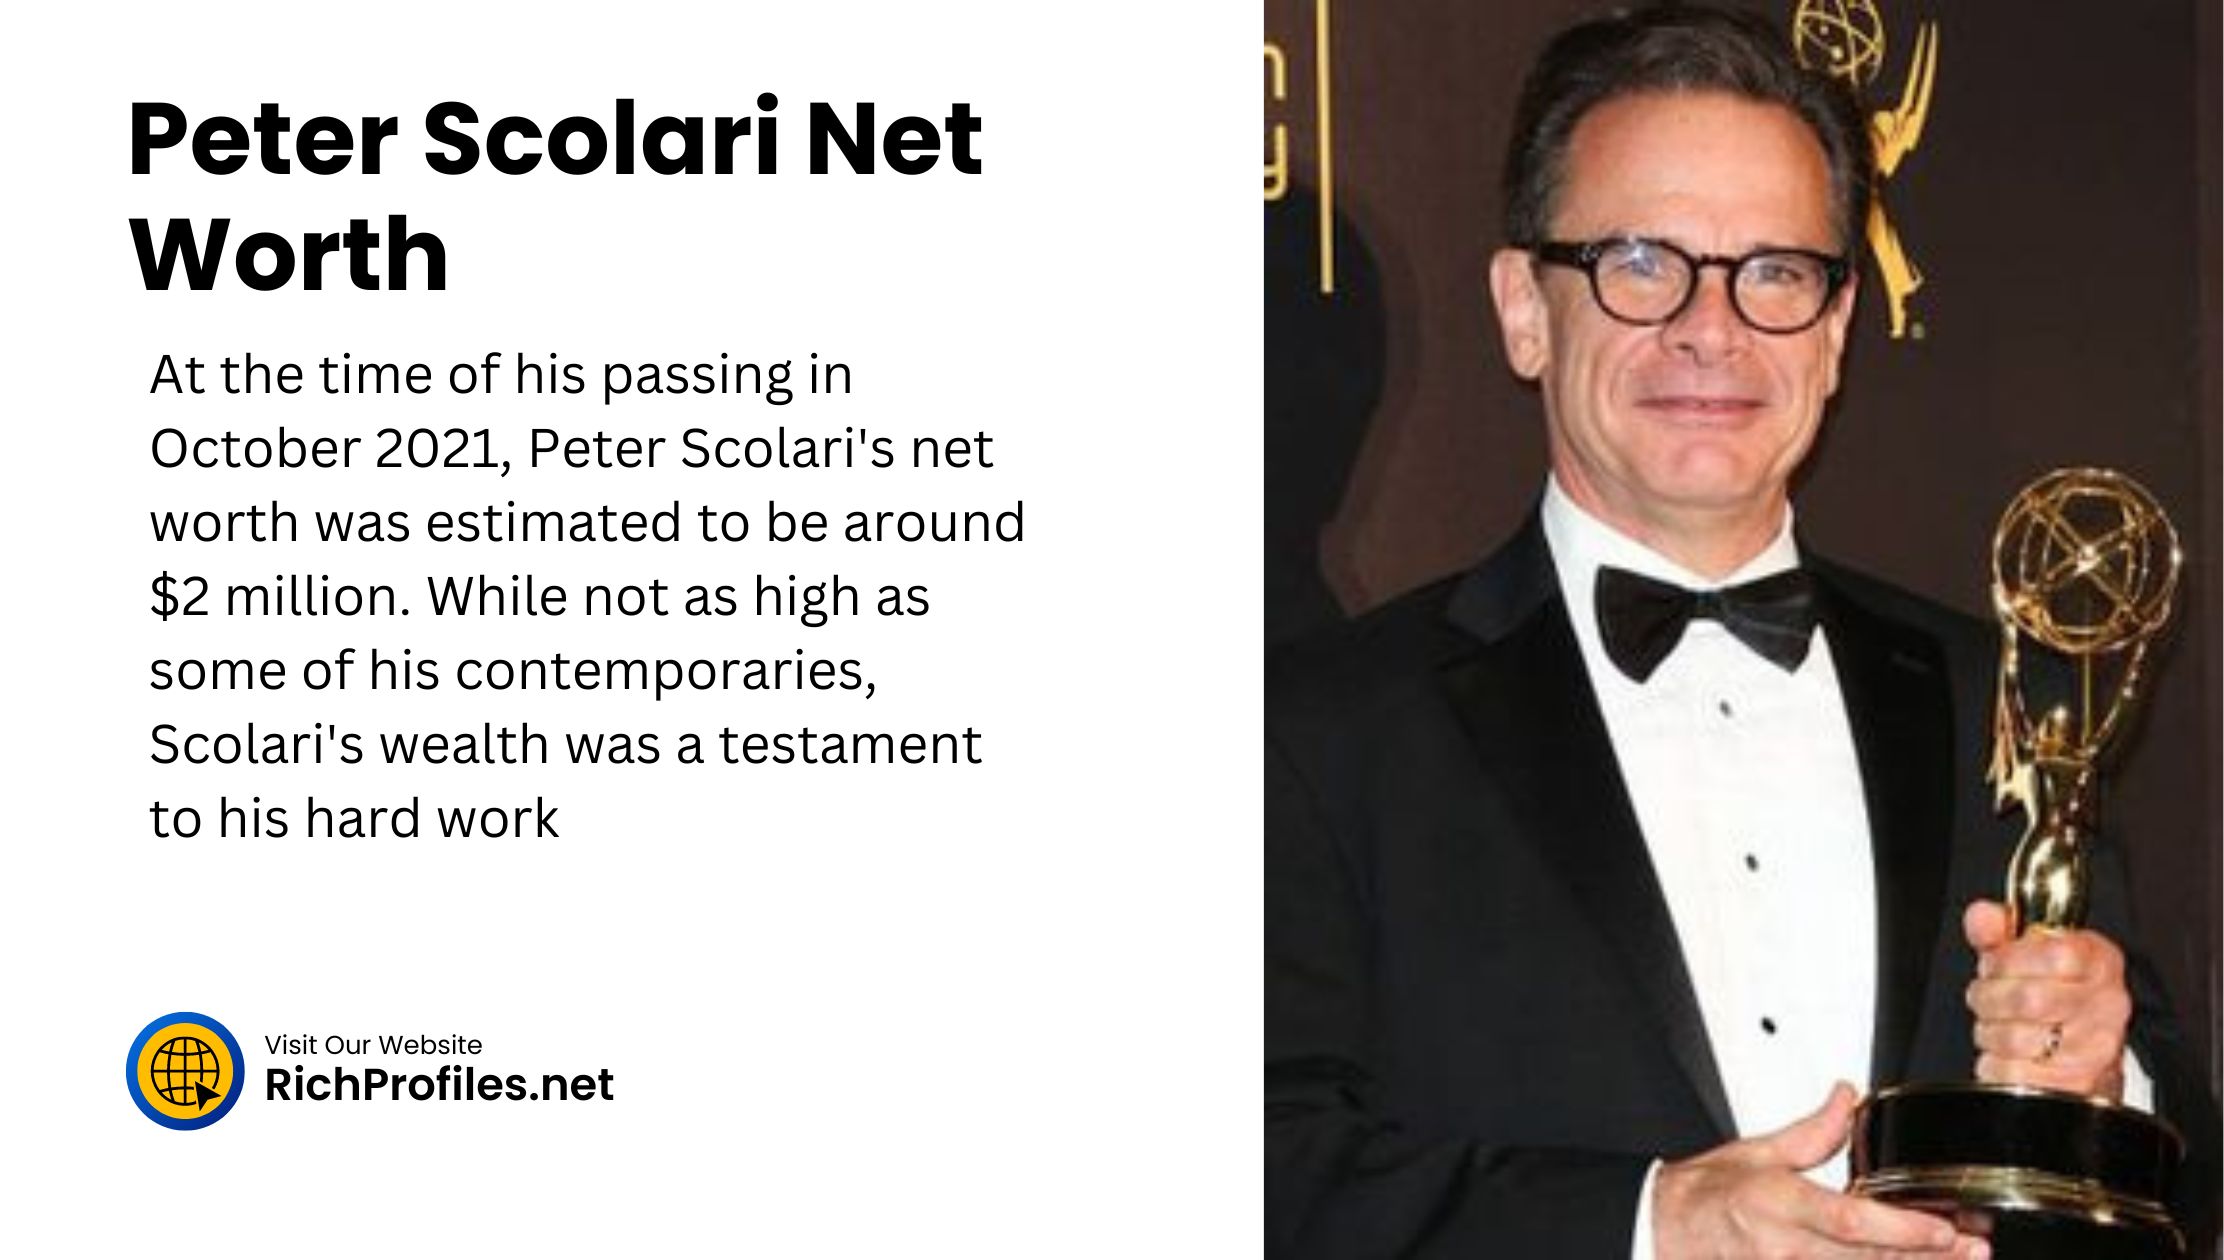 Peter Scolari Net Worth